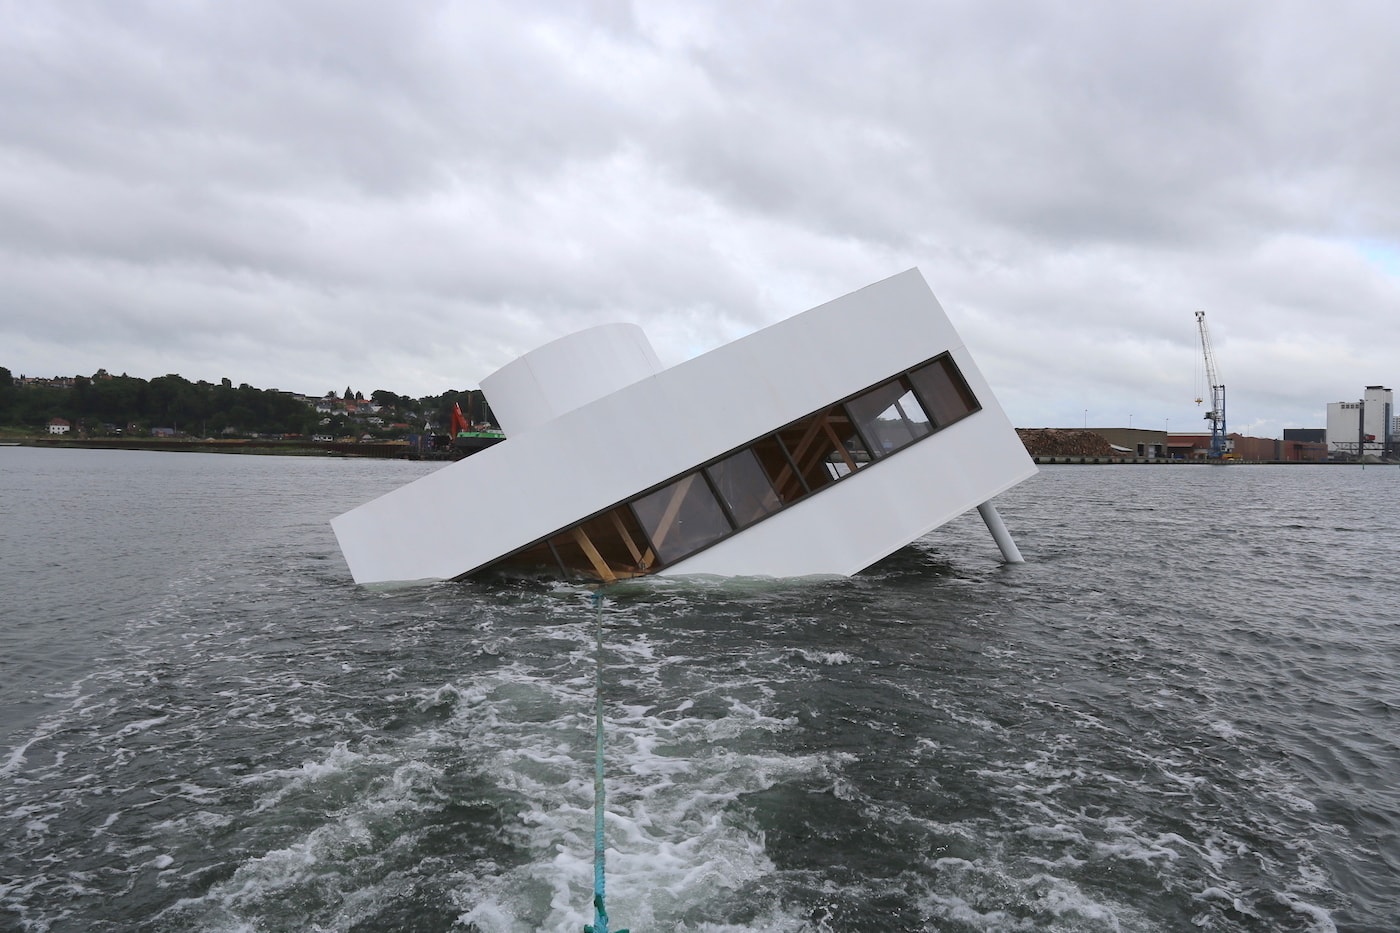 Le Corbusier's Villa Savoye Replica Sunk Floating Art Festival 2018 Danish fjord Flooding Modernity artist Asmund Havsteen-Mikkelsen Veijle Art Museum